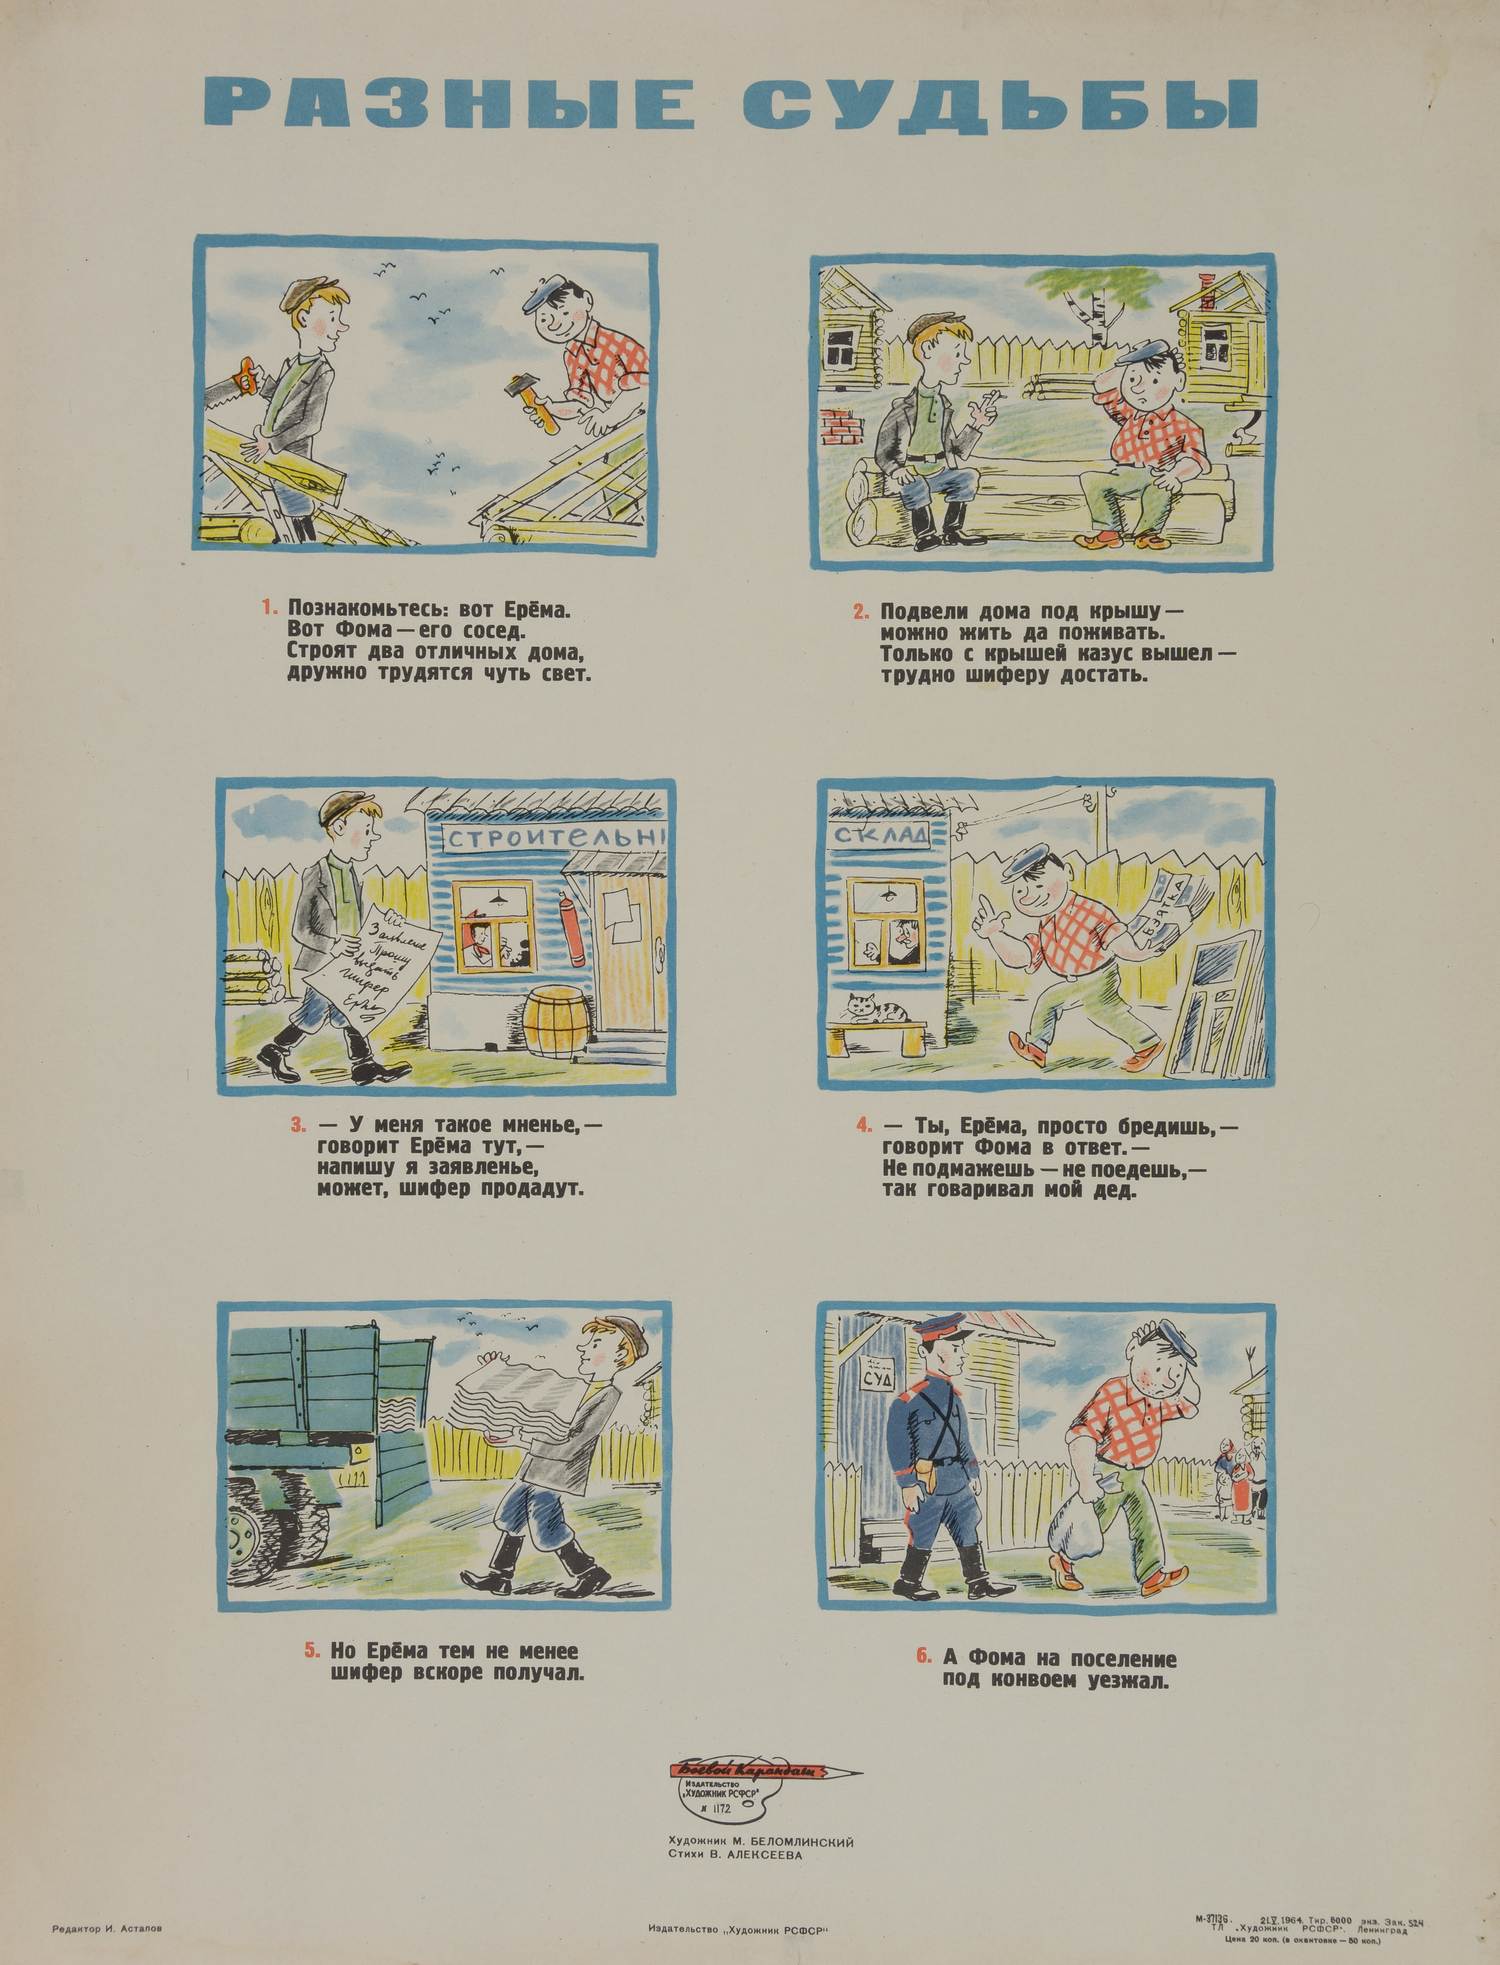 («Боевой карандаш») Беломлинский М. Плакат «Разные судьбы» (Л., 1964).